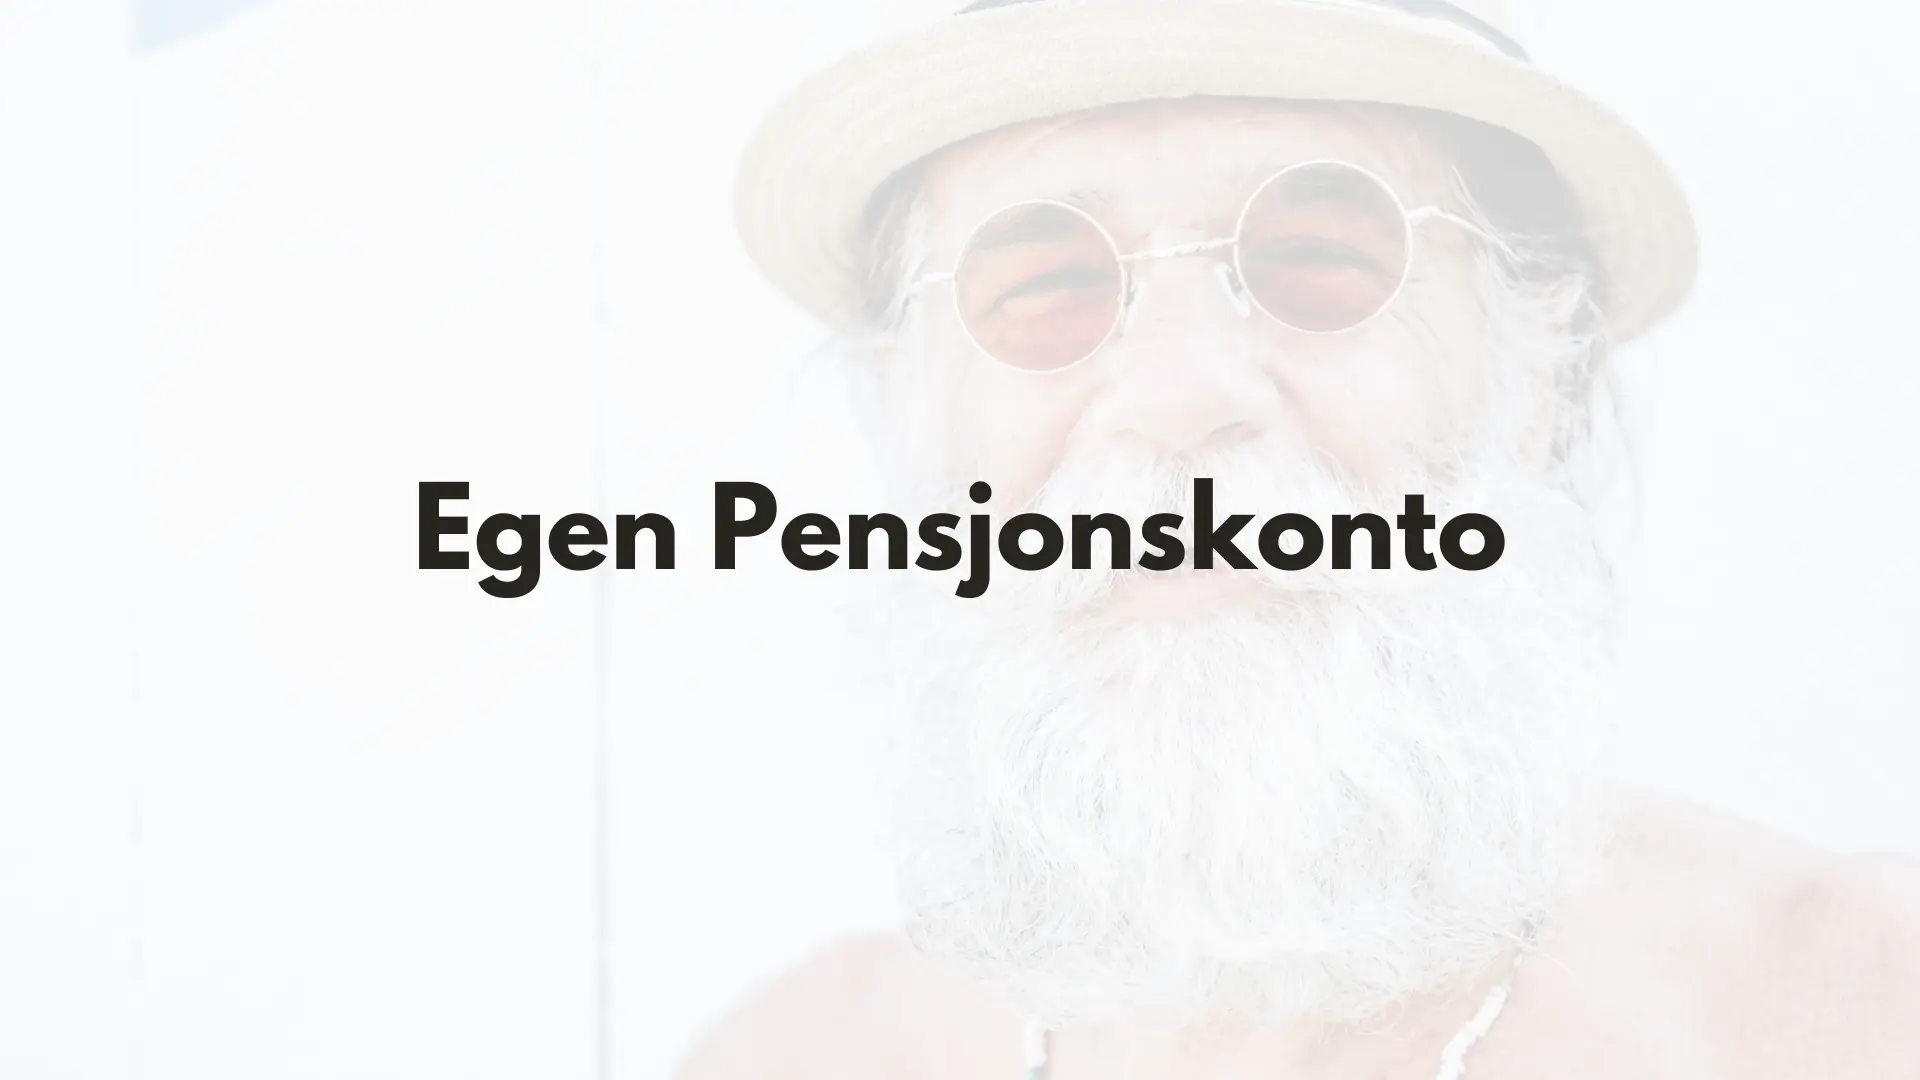 Bilde av en kul pensjonist med tekst "Egen pensjonskonto"